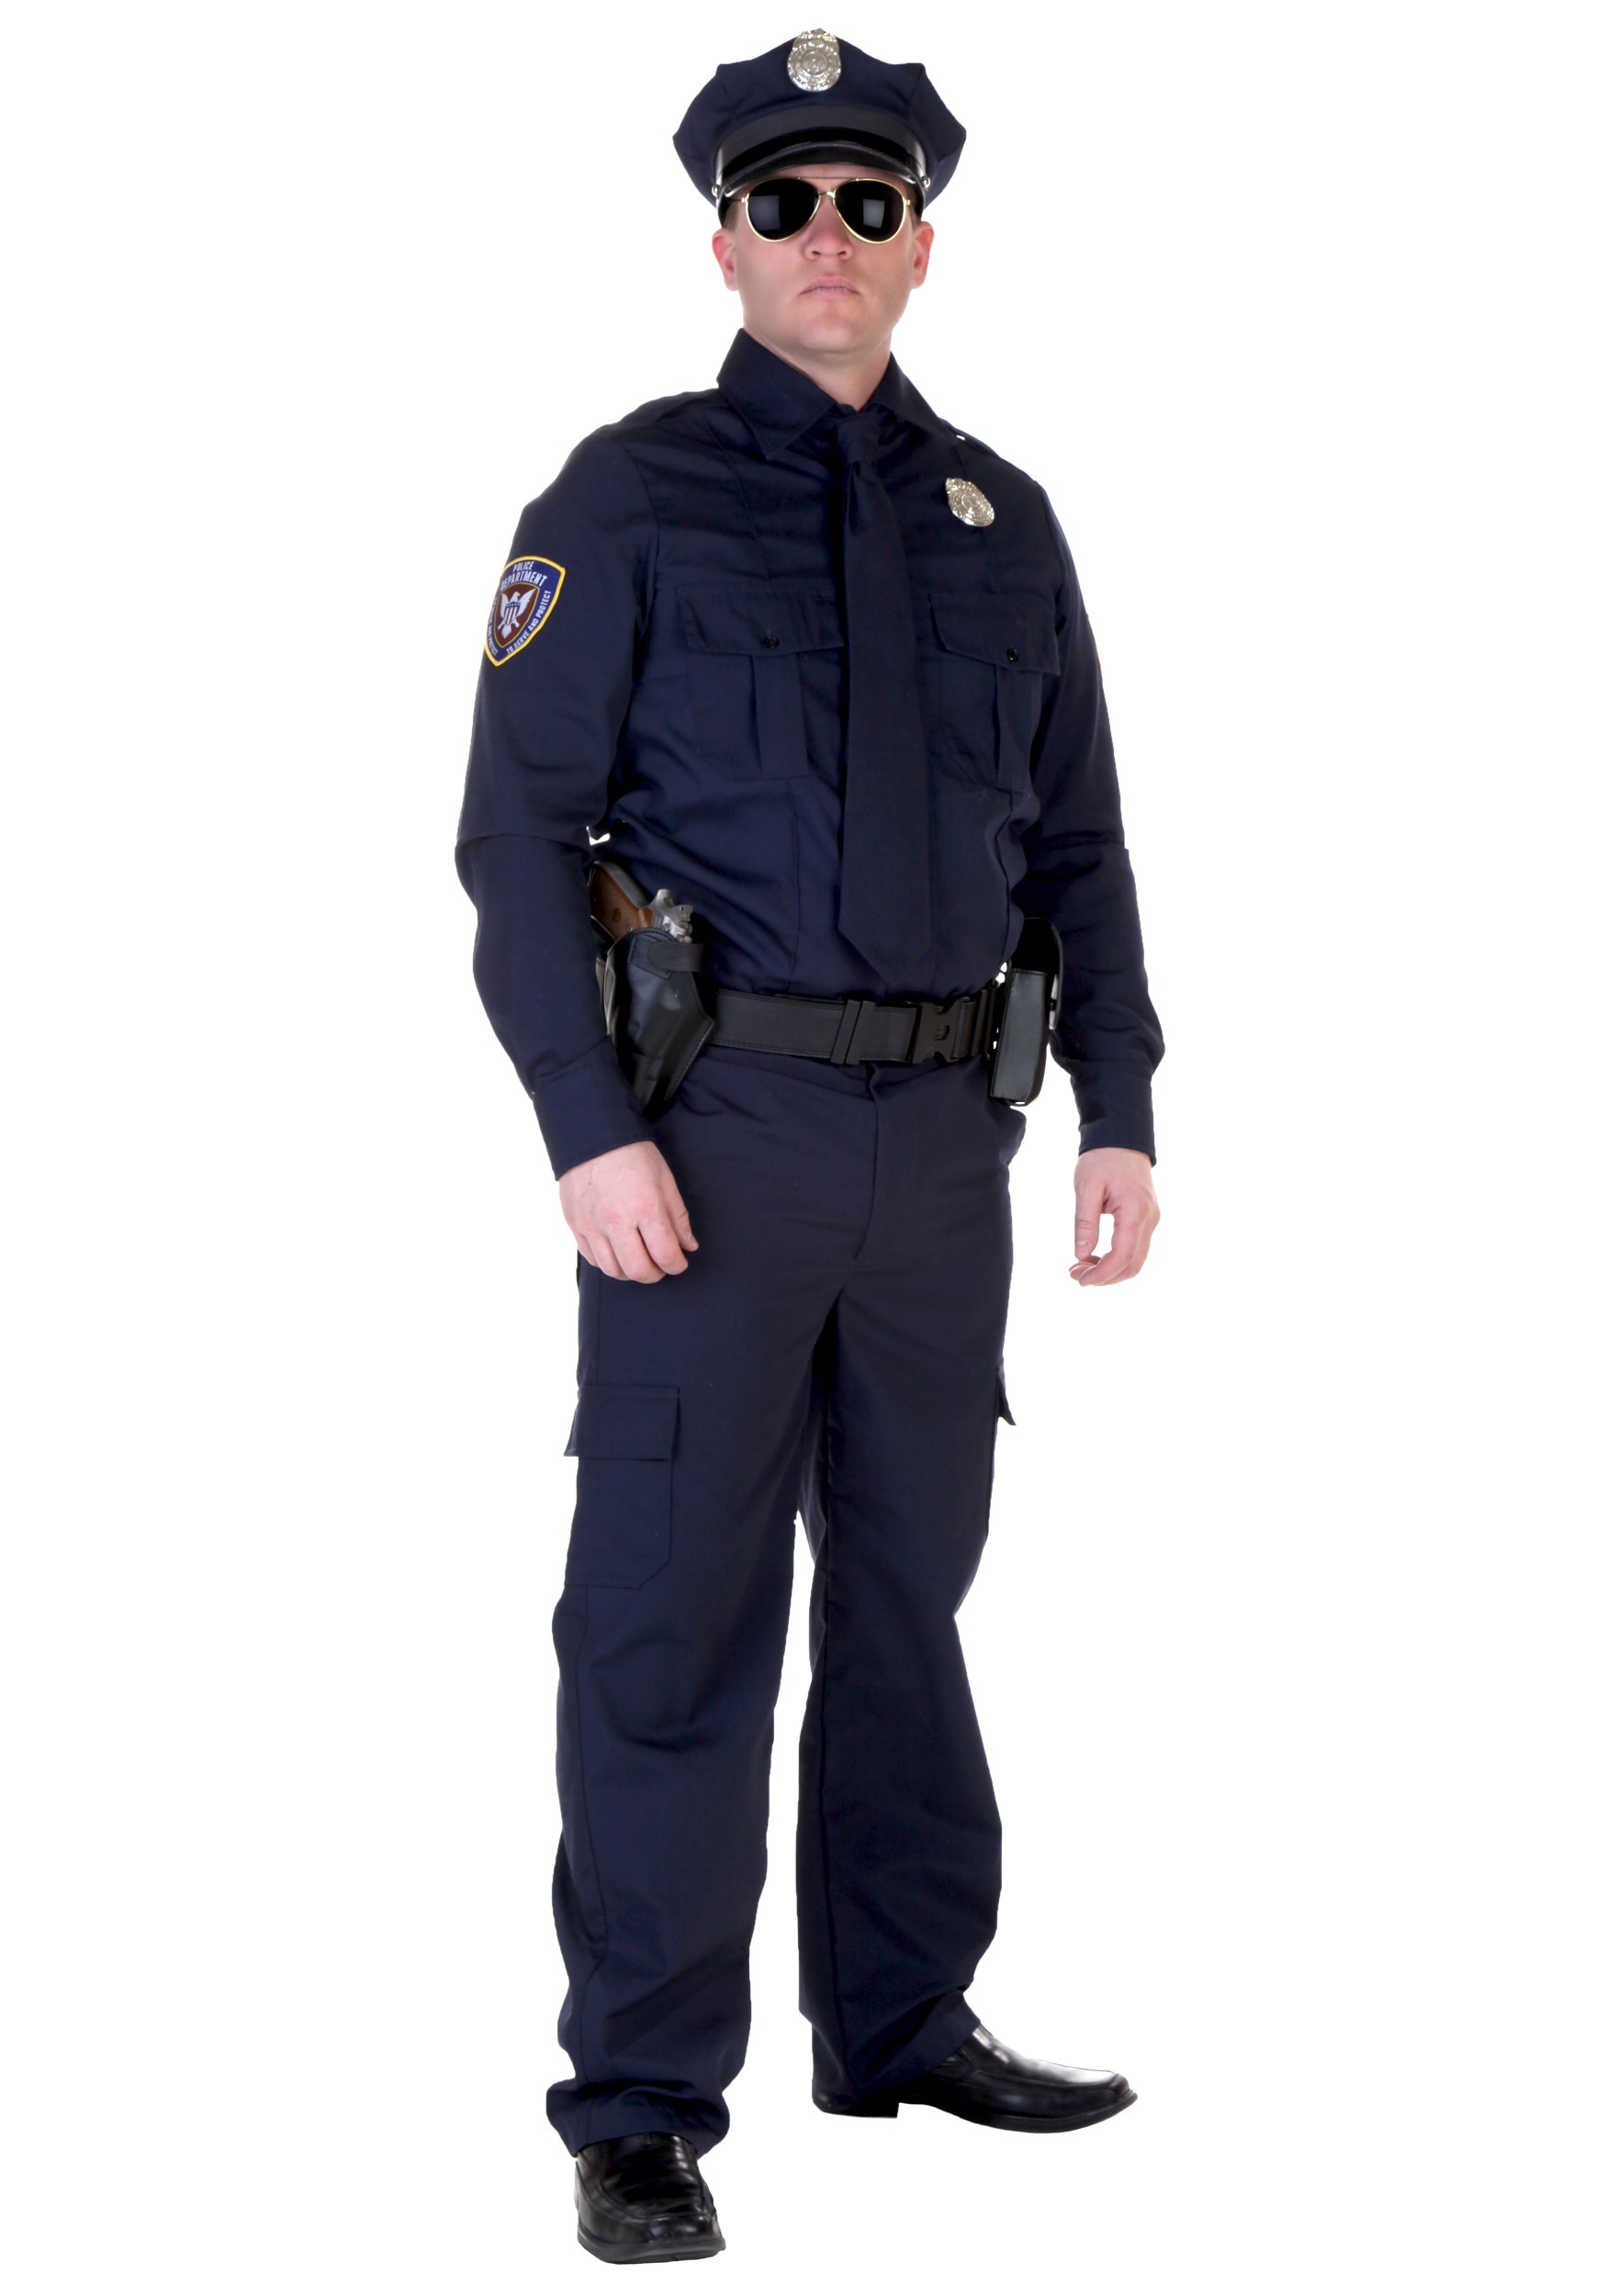 Authentic Plus Size Cop Costume